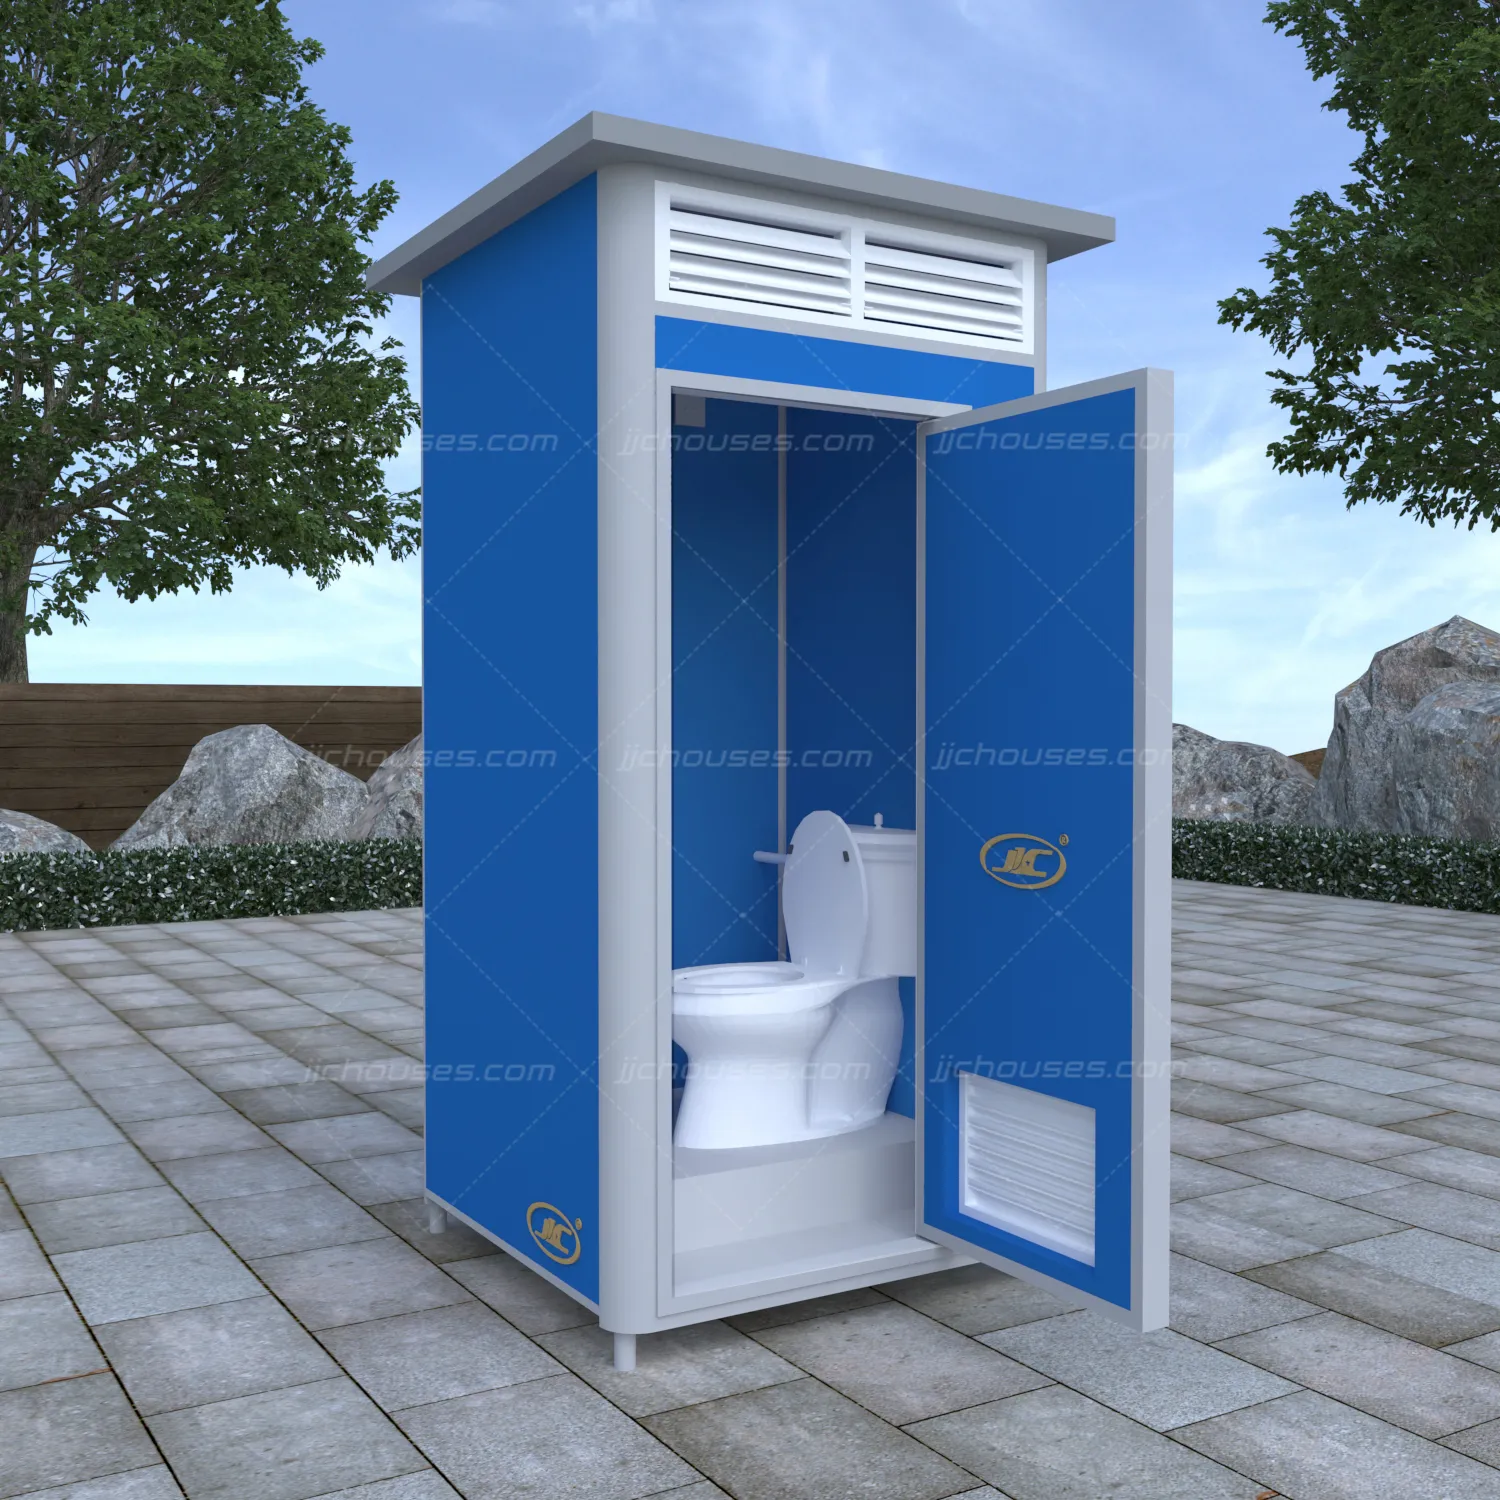 Pour construction mobile pliable sans rinçage eco chemical blue toilette portable et salle de douche unité de toilette préfabriquée